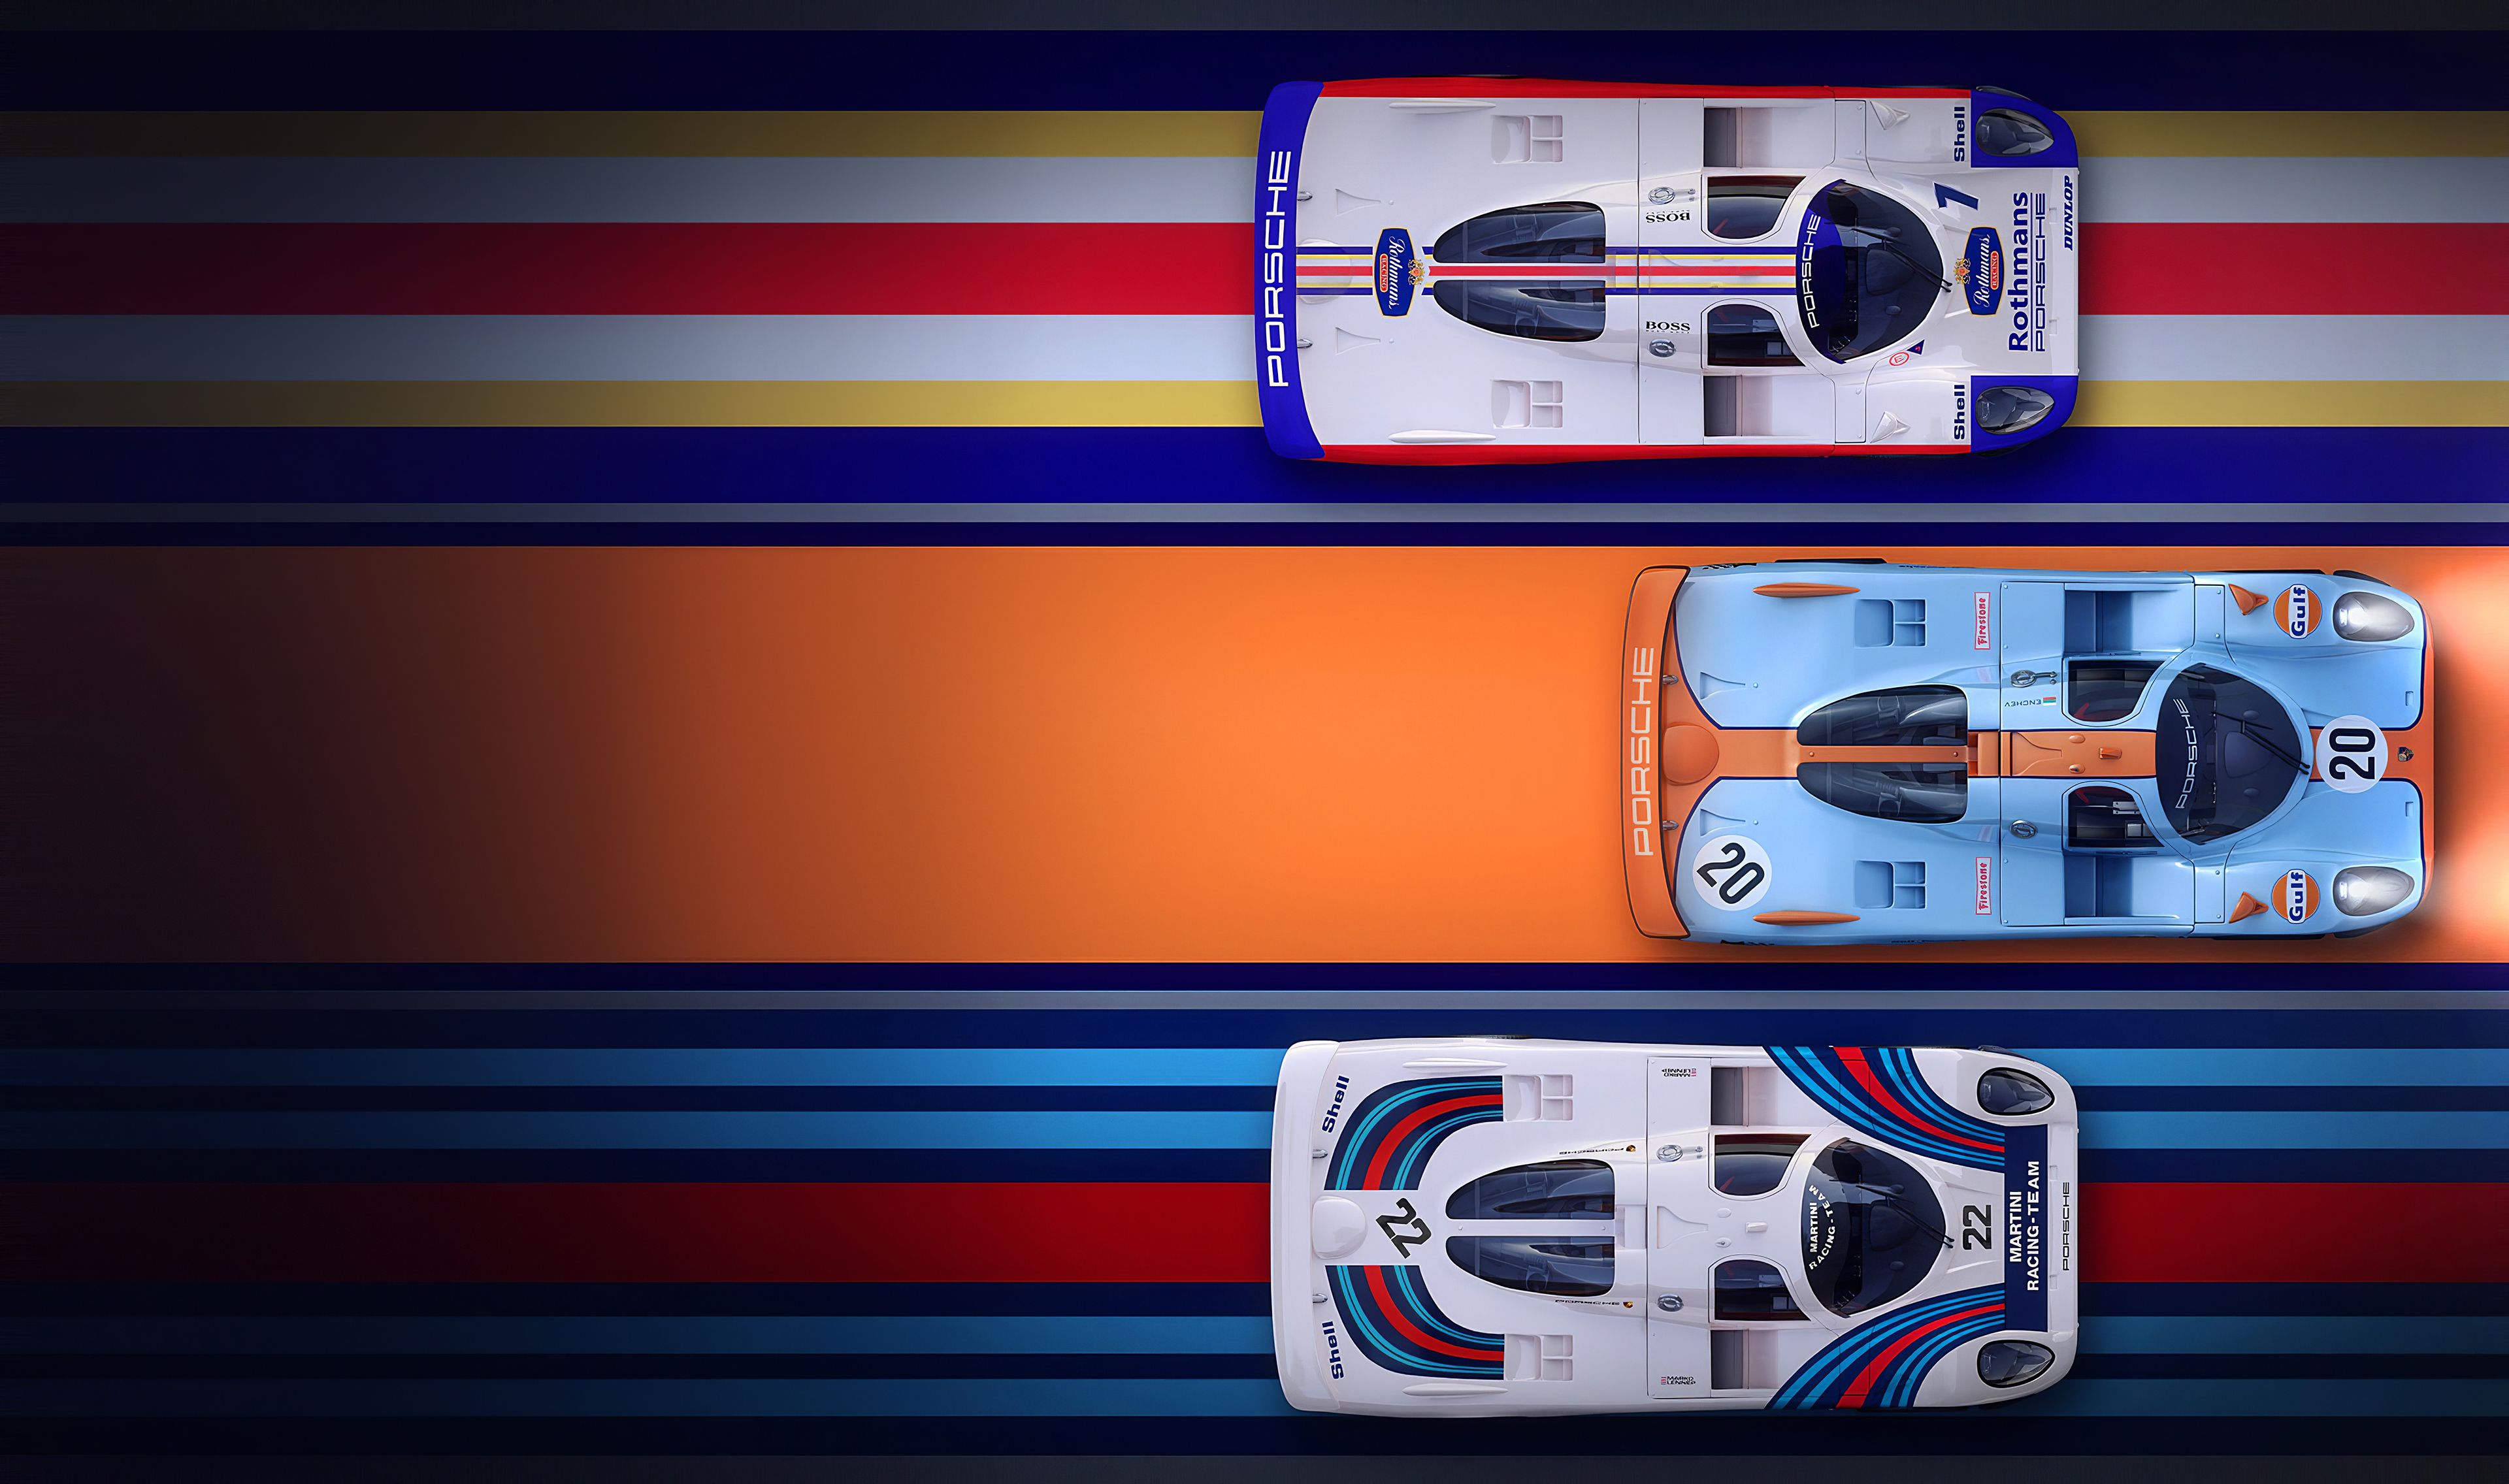 Italdesign Brivido Martini Racing Wallpapers